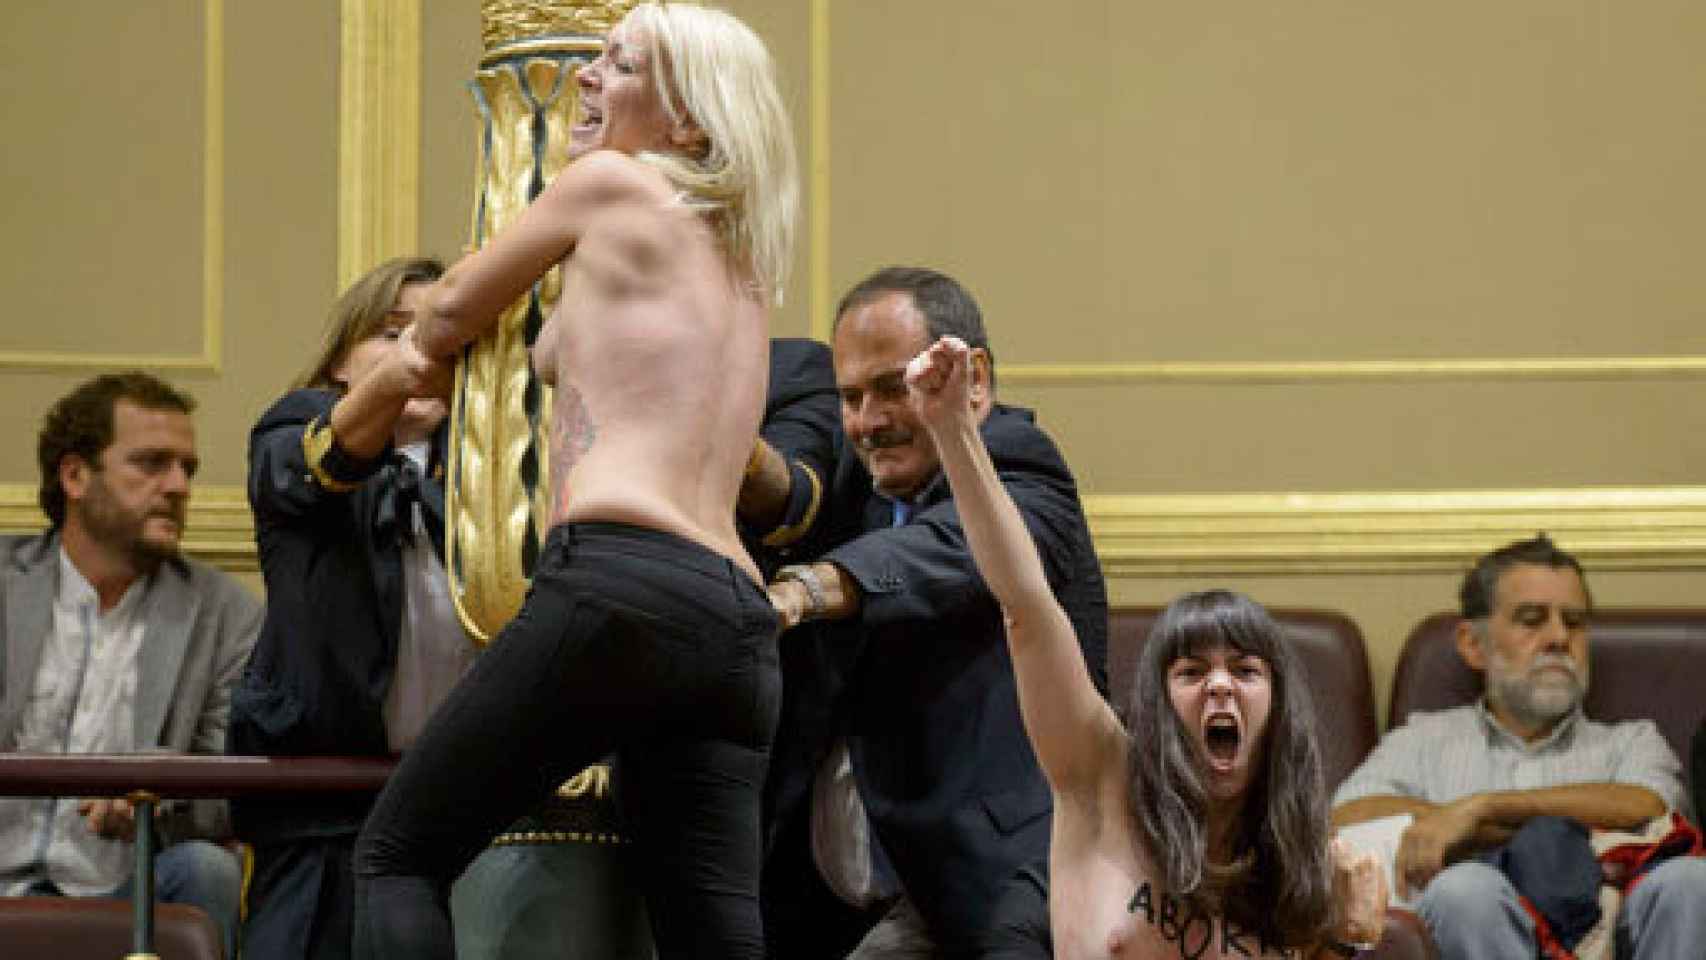 Image: En el principio era el cuerpo. Femen